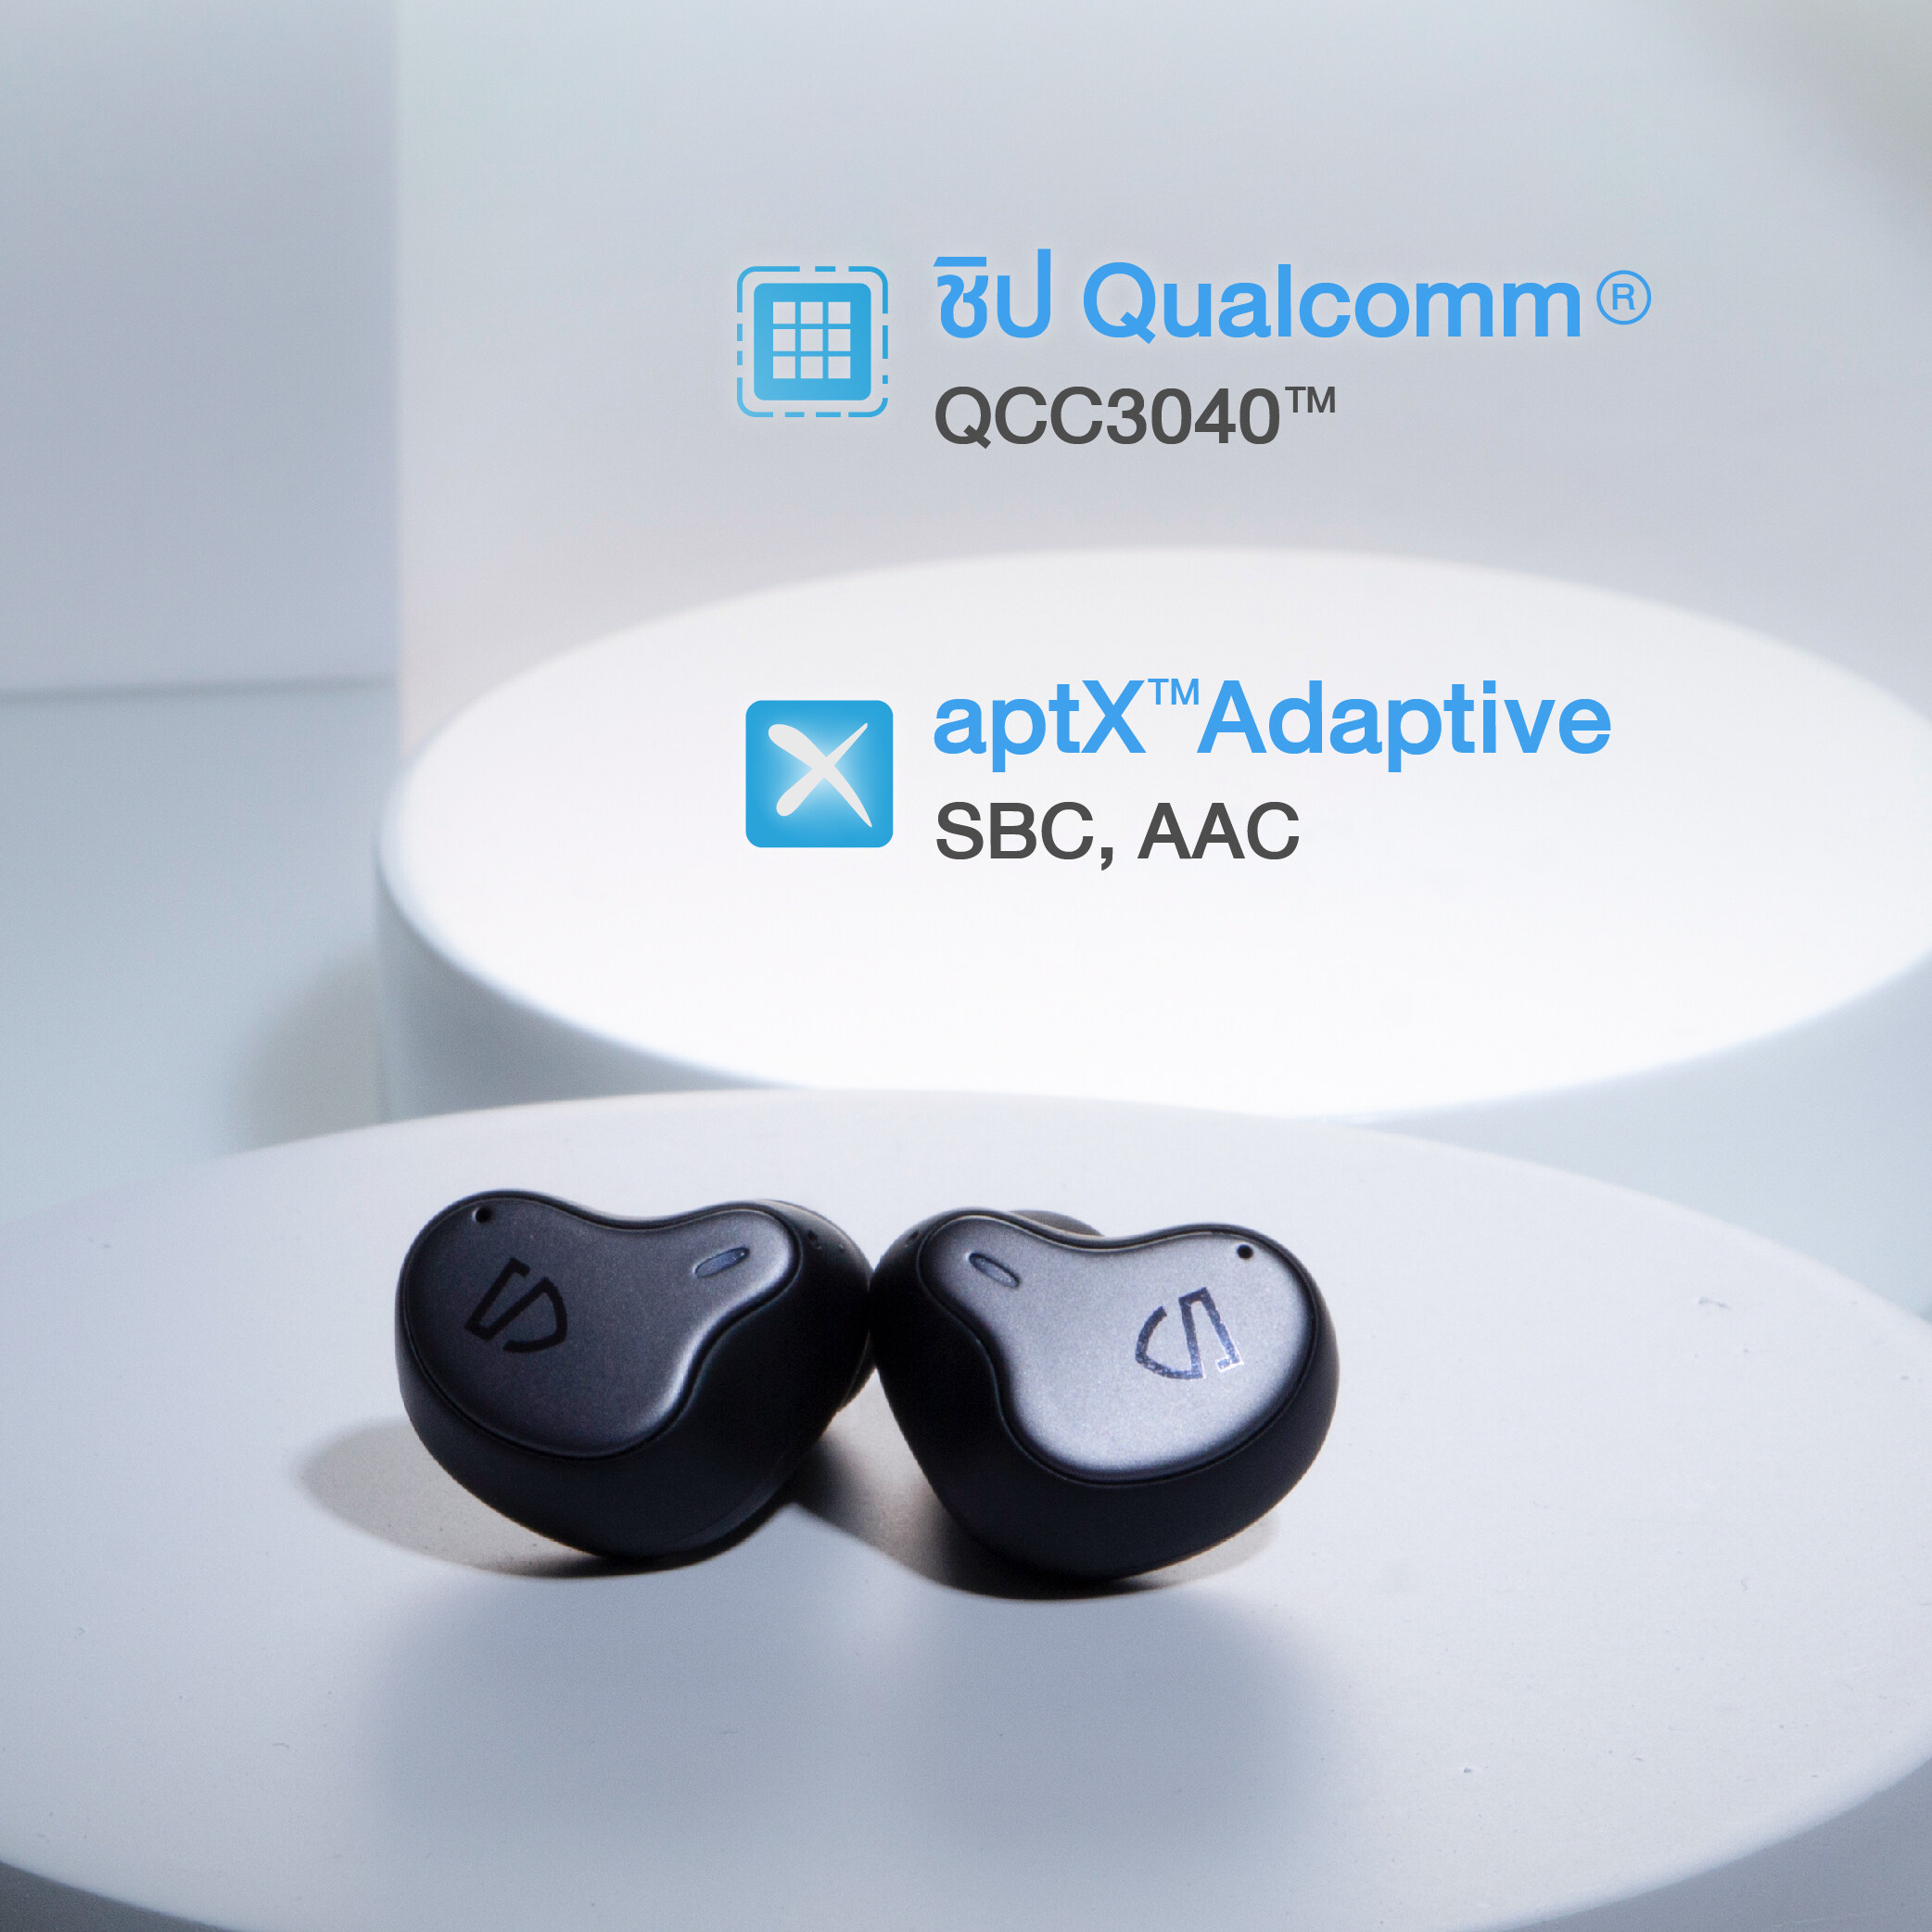 (ประกันศูนย์1ปี) Soundpeats H1 Bluetooth 5.2 หูฟัง หูฟังบลูทูธ หูฟังไร้สาย True Wireless Earphone